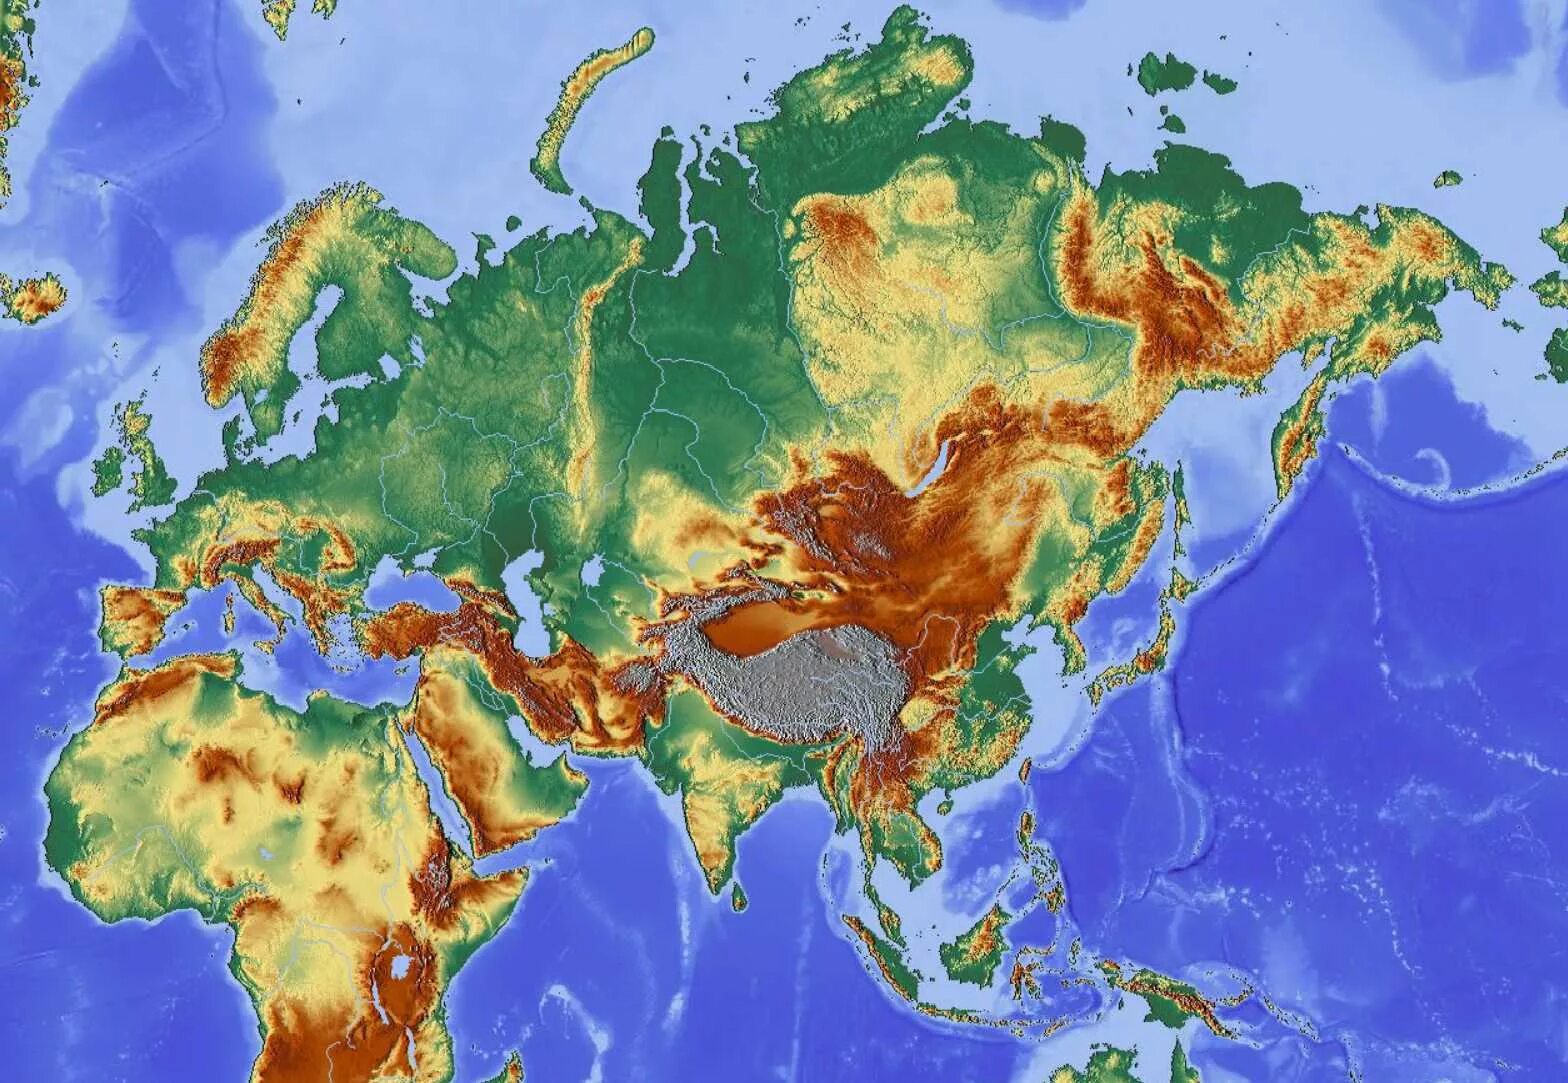 Середина евразии. Материк Евразия. Материк Евразия на карте. Континент Евразия. Рельефная карта Евразии.